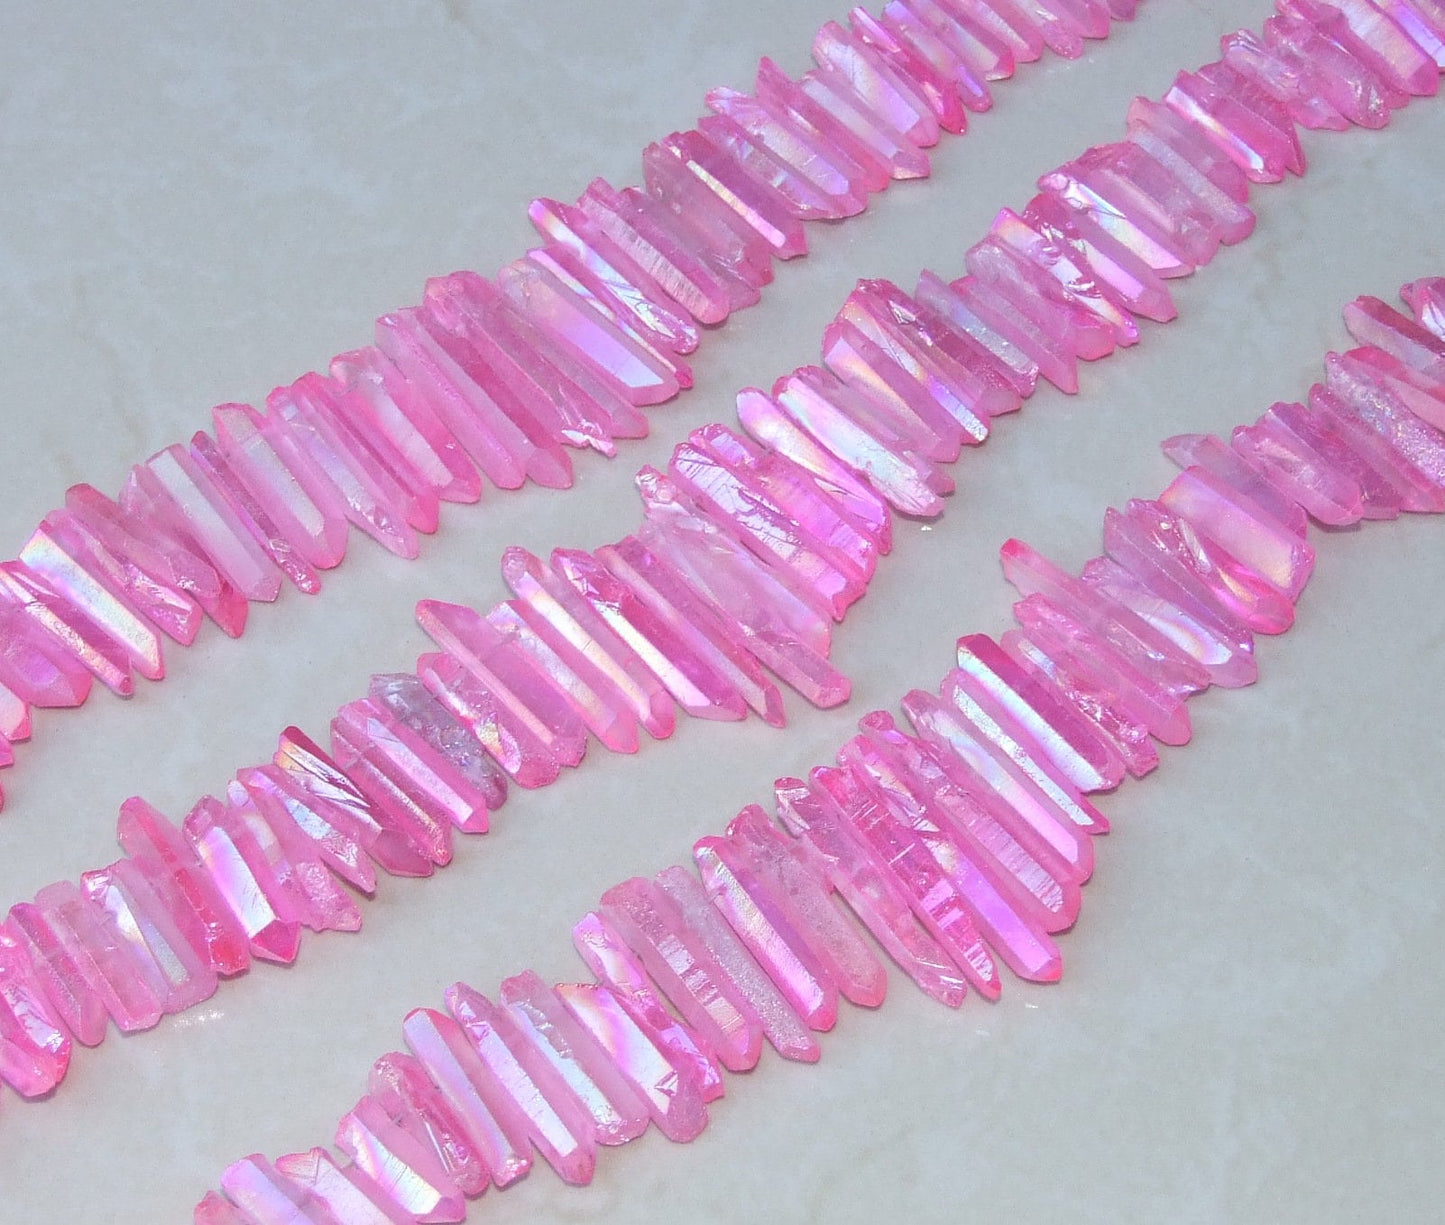 Pink Titanium Quartz Cluster Point, Titanium Quartz Points Strand, Raw Quartz Points Drilled, Quartz Crystals Points Strand Beads, 20-36mm